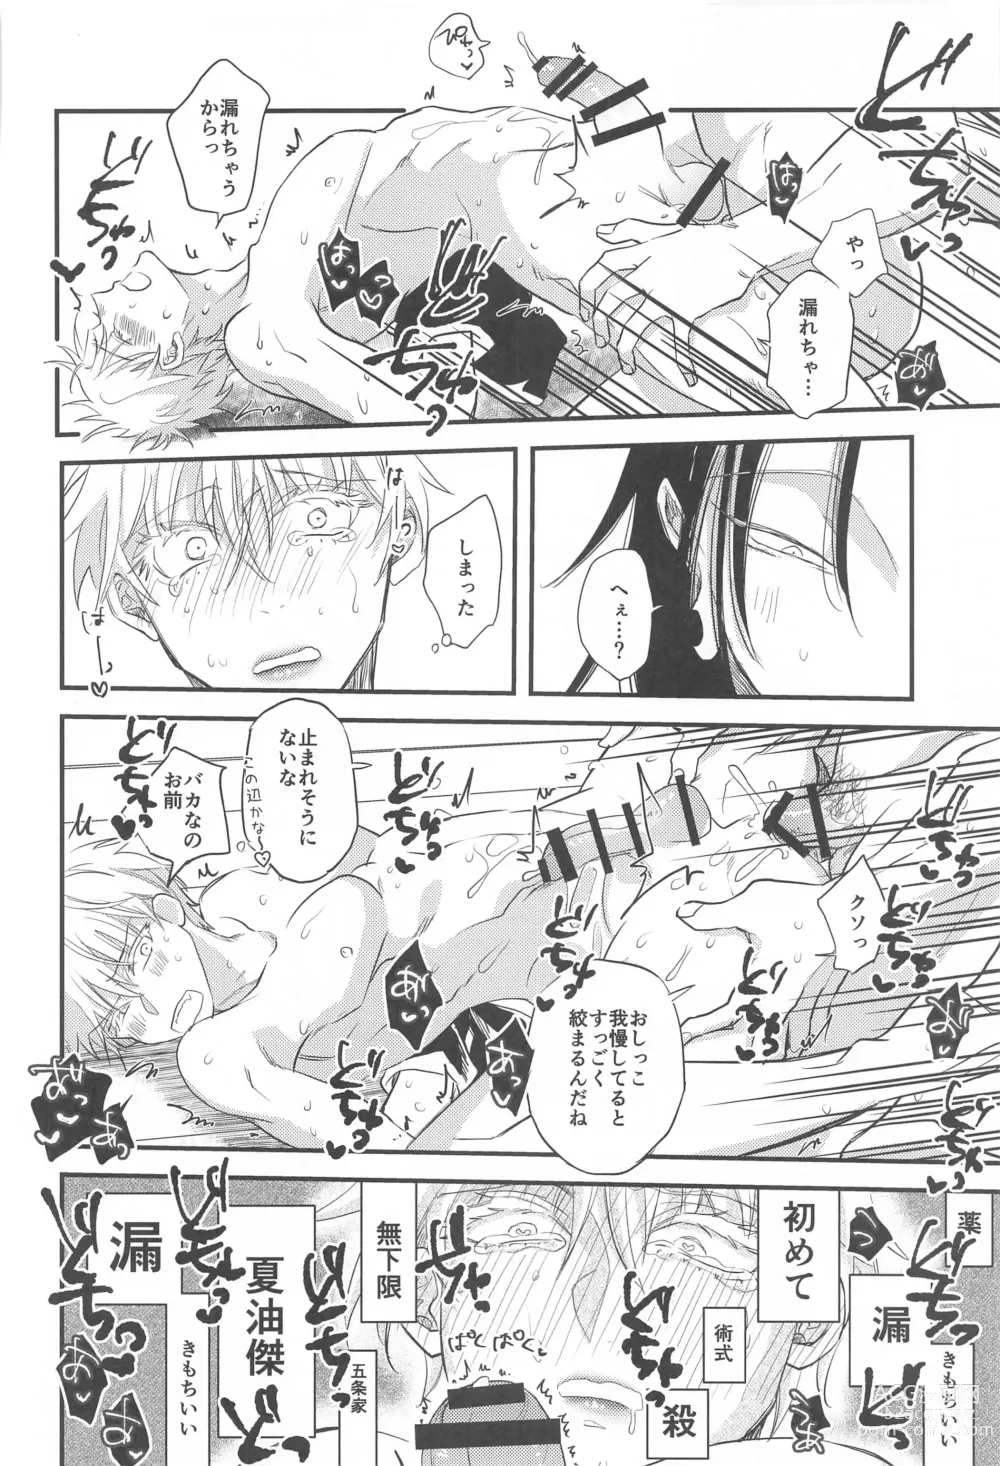 Page 29 of doujinshi Saikyou  x Kimeseku  x Sokuochi 2-koma